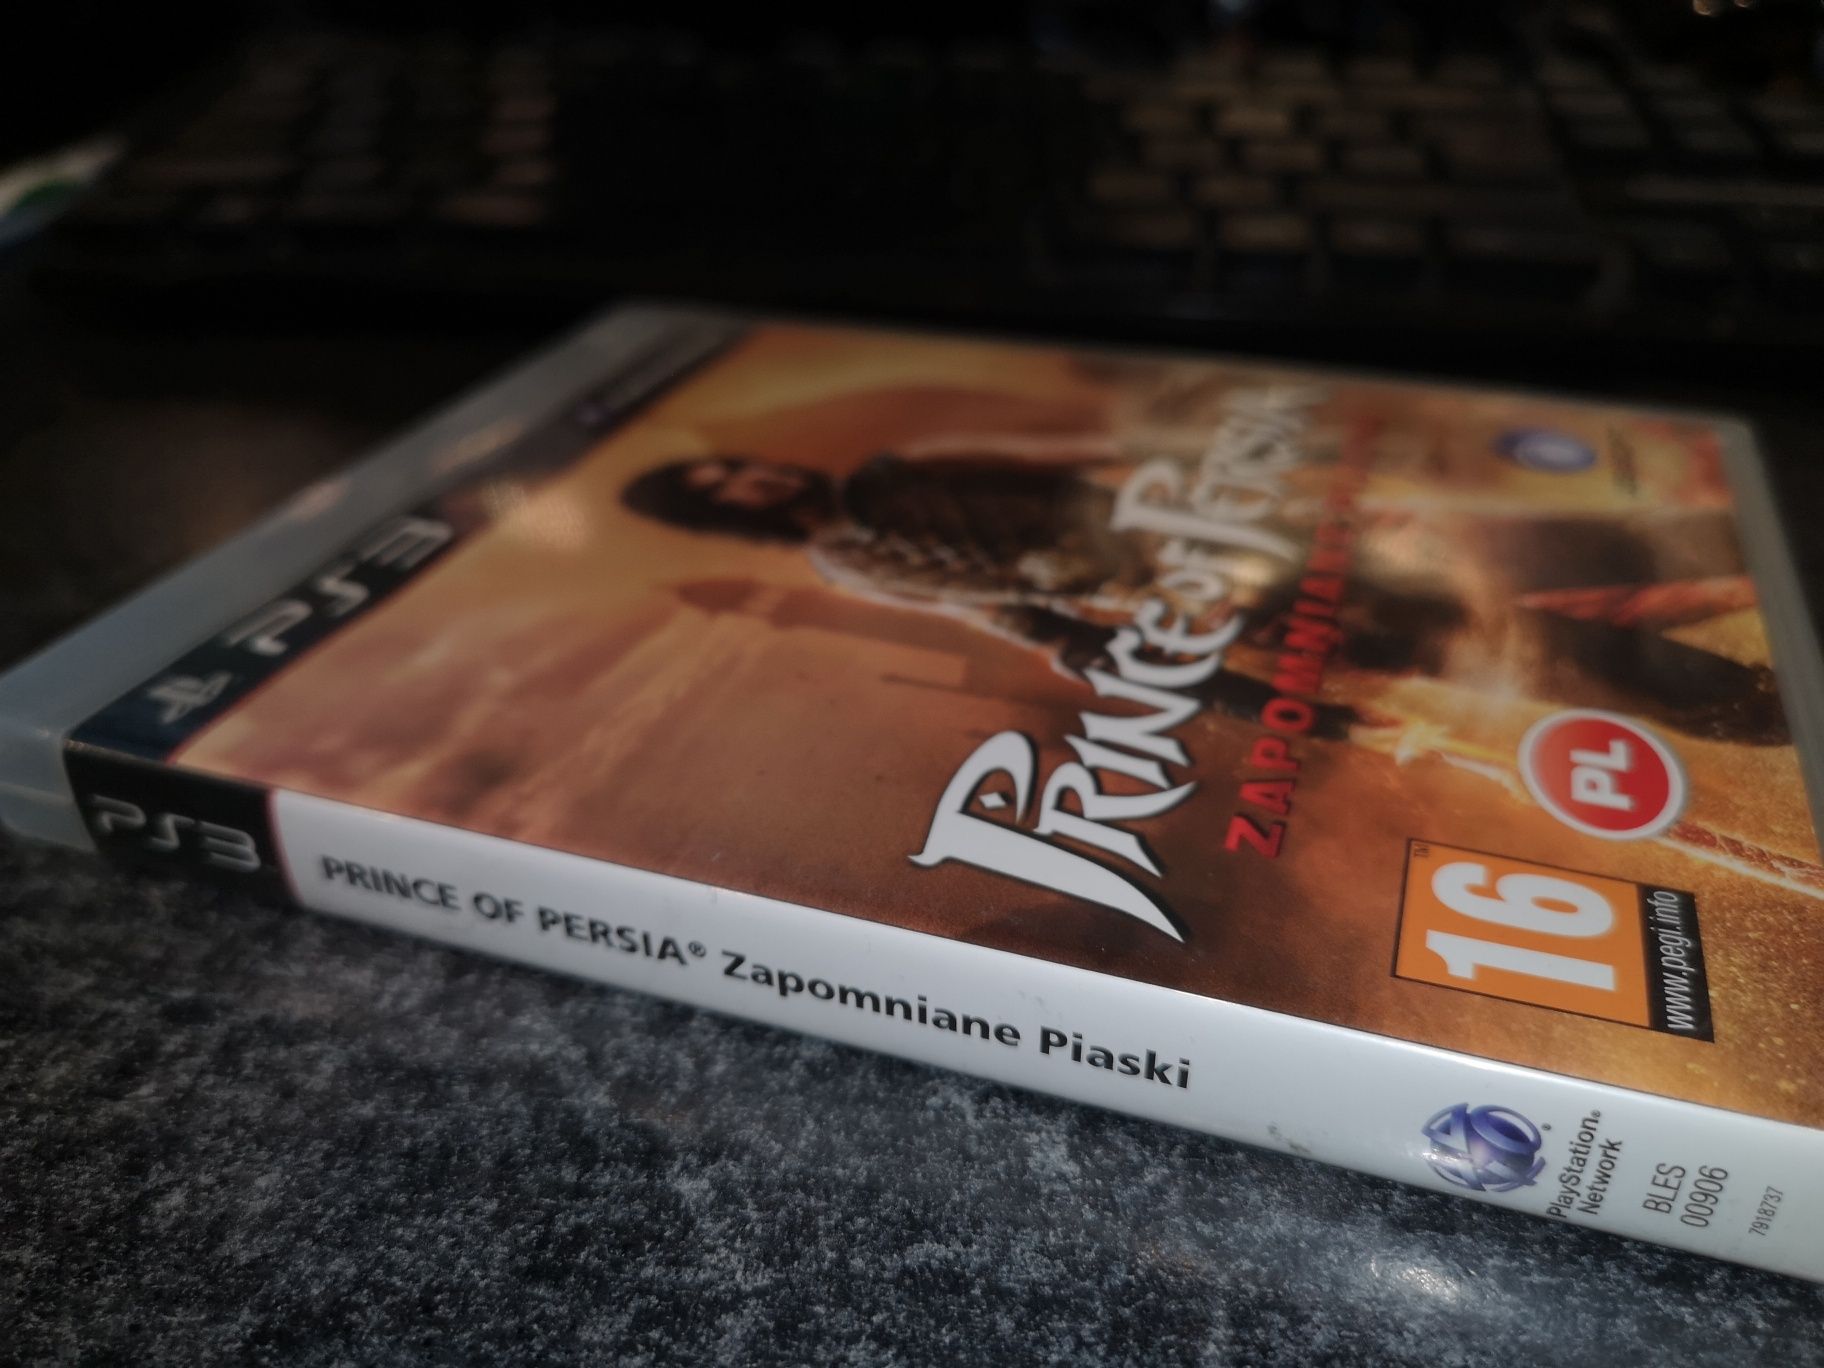 Prince of Persia Zapomniane Piaski PS3 gra PL (możliwość wymiany)